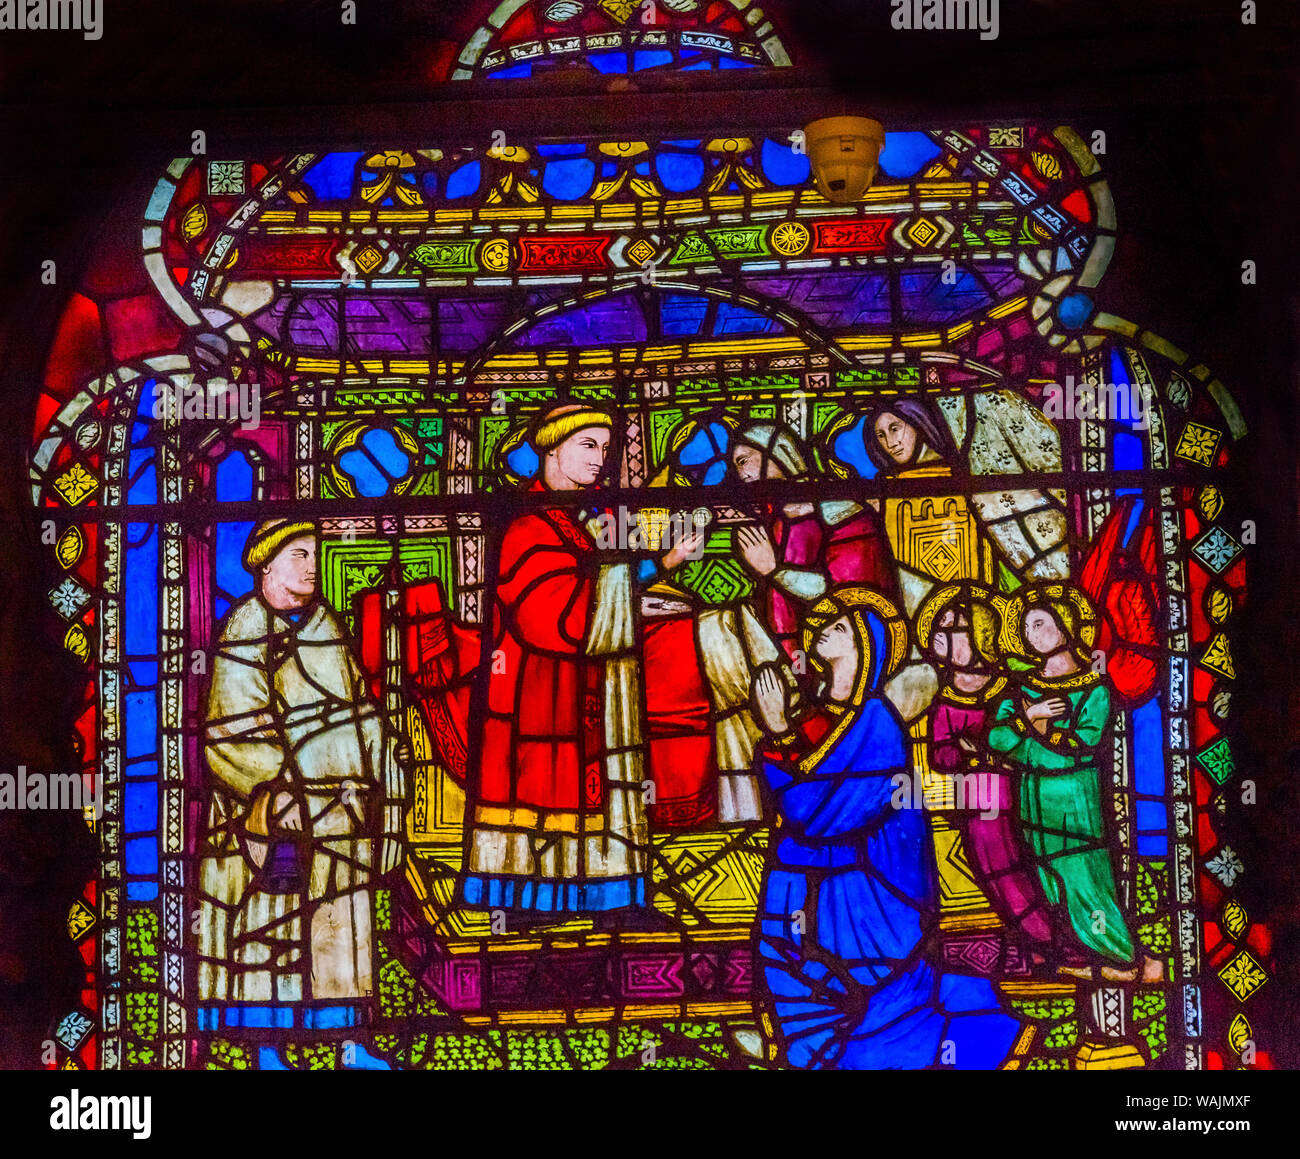 Vierge Marie et prêtre, vitrail, église Orsanmichele, Florence, Italie. Eglise et vitraux de 1400's. Banque D'Images